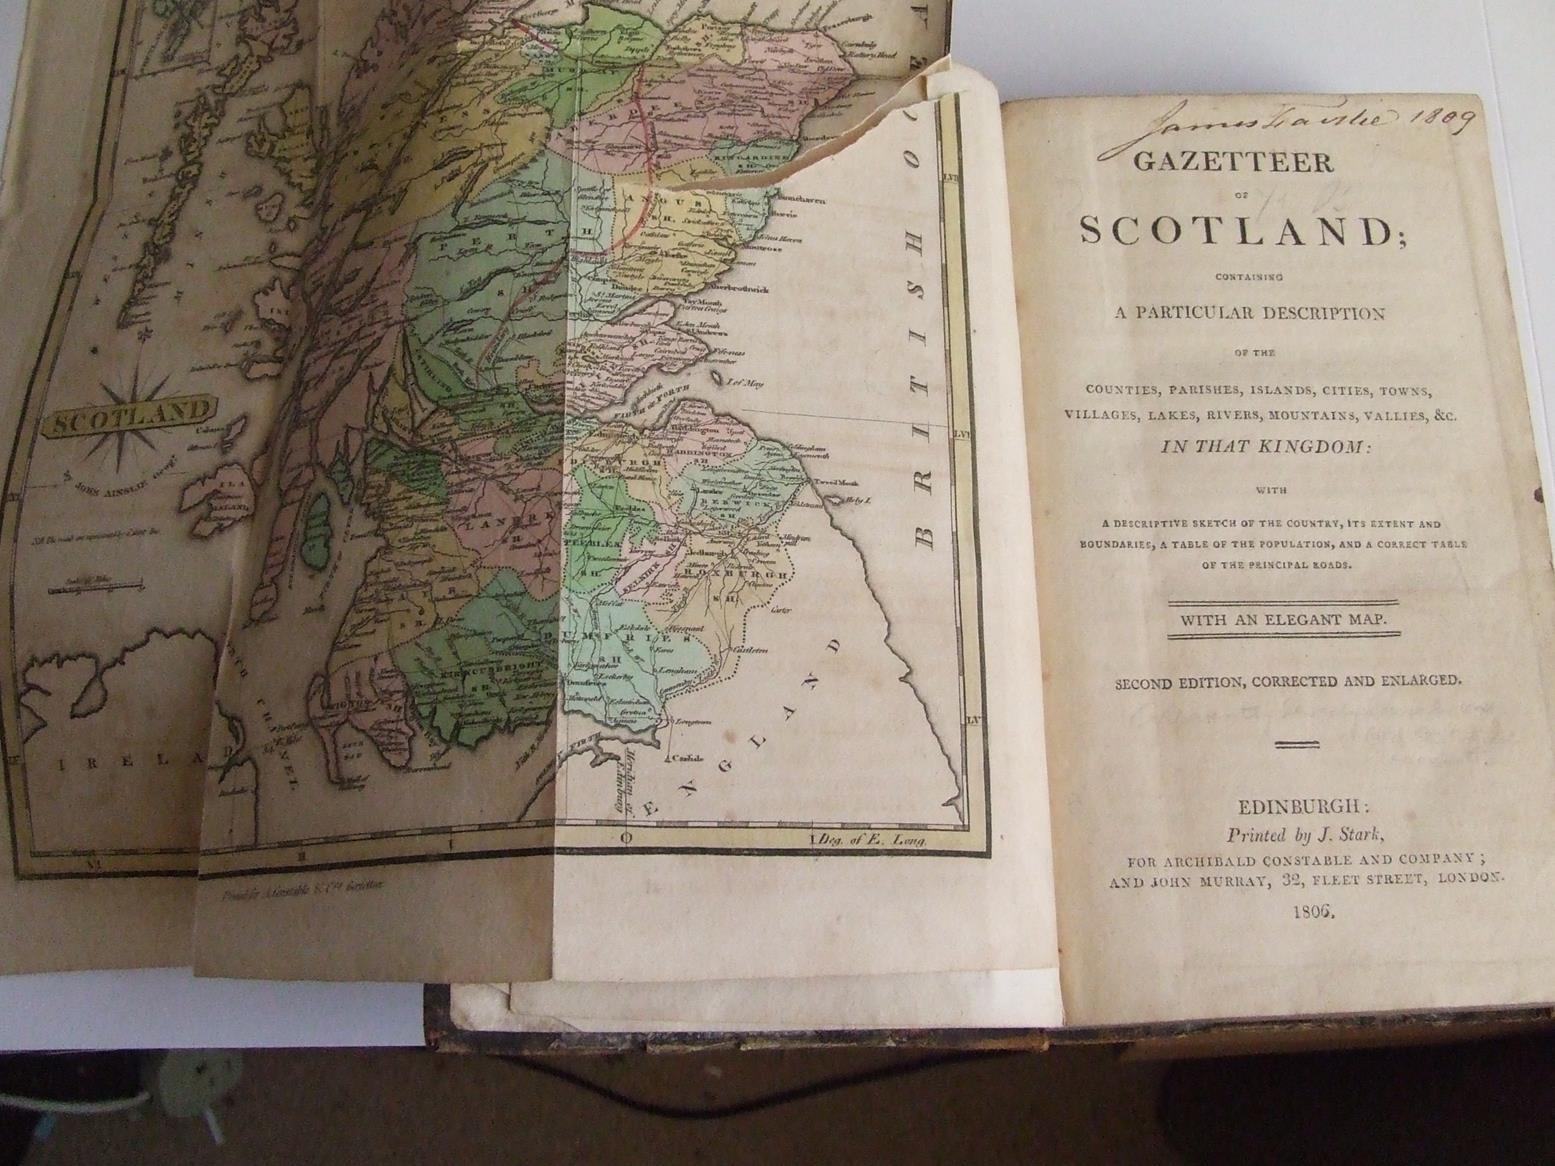 Gazetteer of Scotland